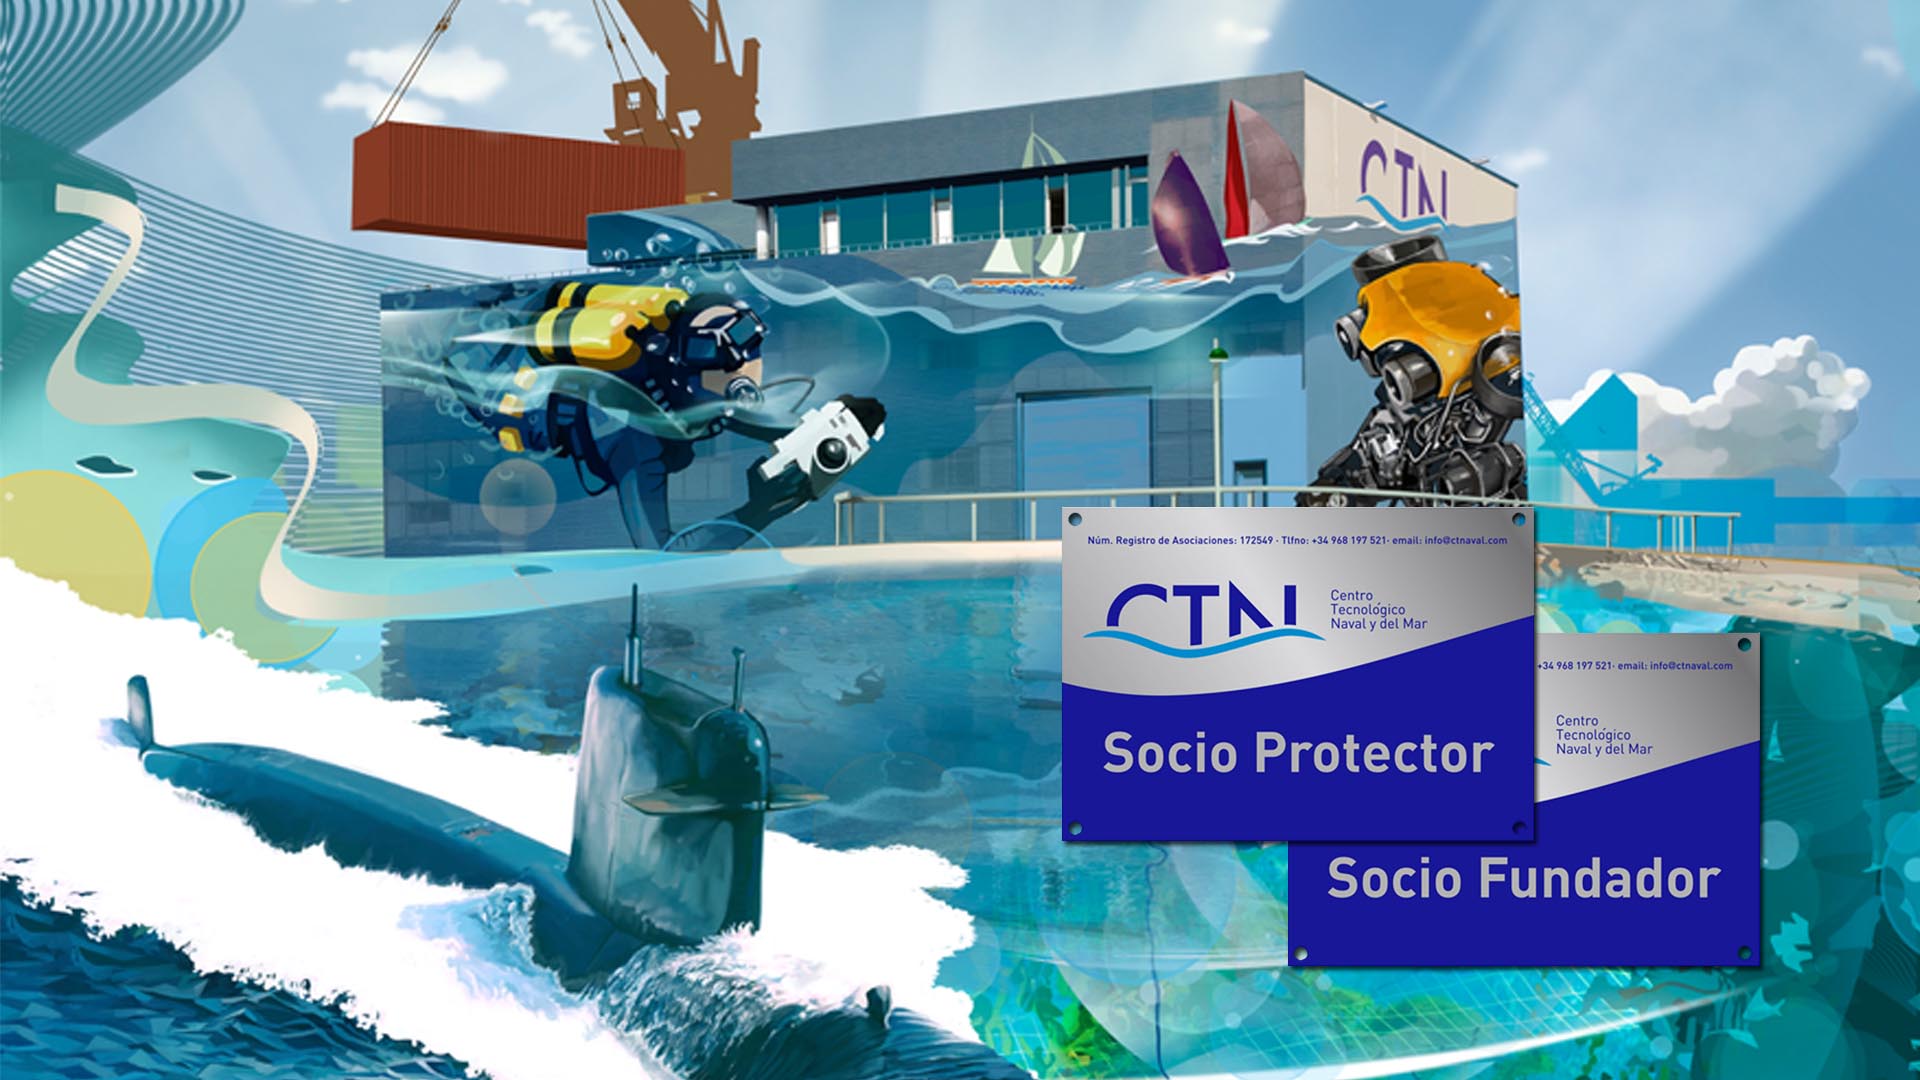 Centro Tecnológico Naval y del Mar, branding online, offline